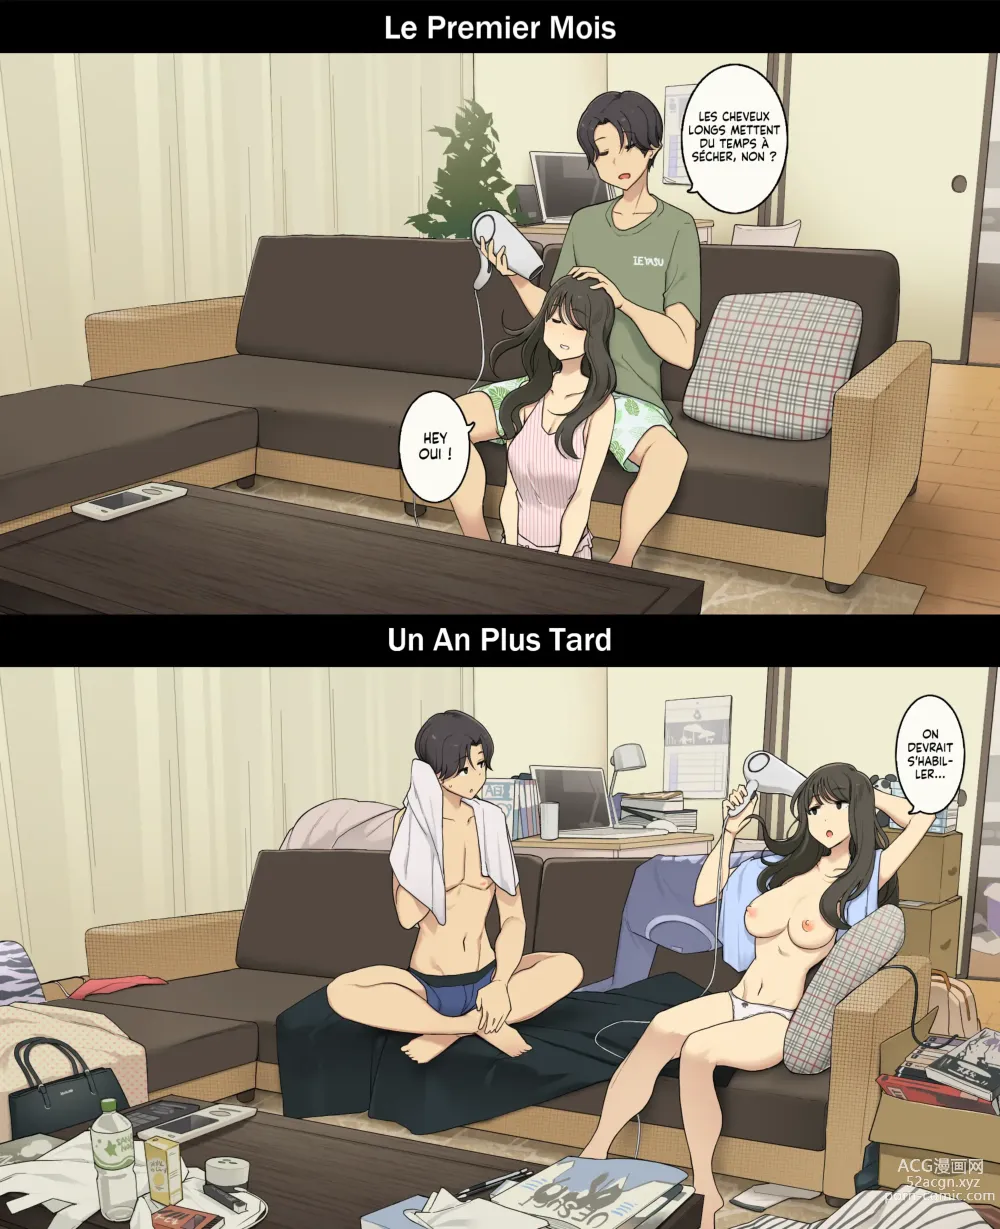 Page 14 of doujinshi Une journée dans la vie d'un couple : Premier mois vs un an plus tard